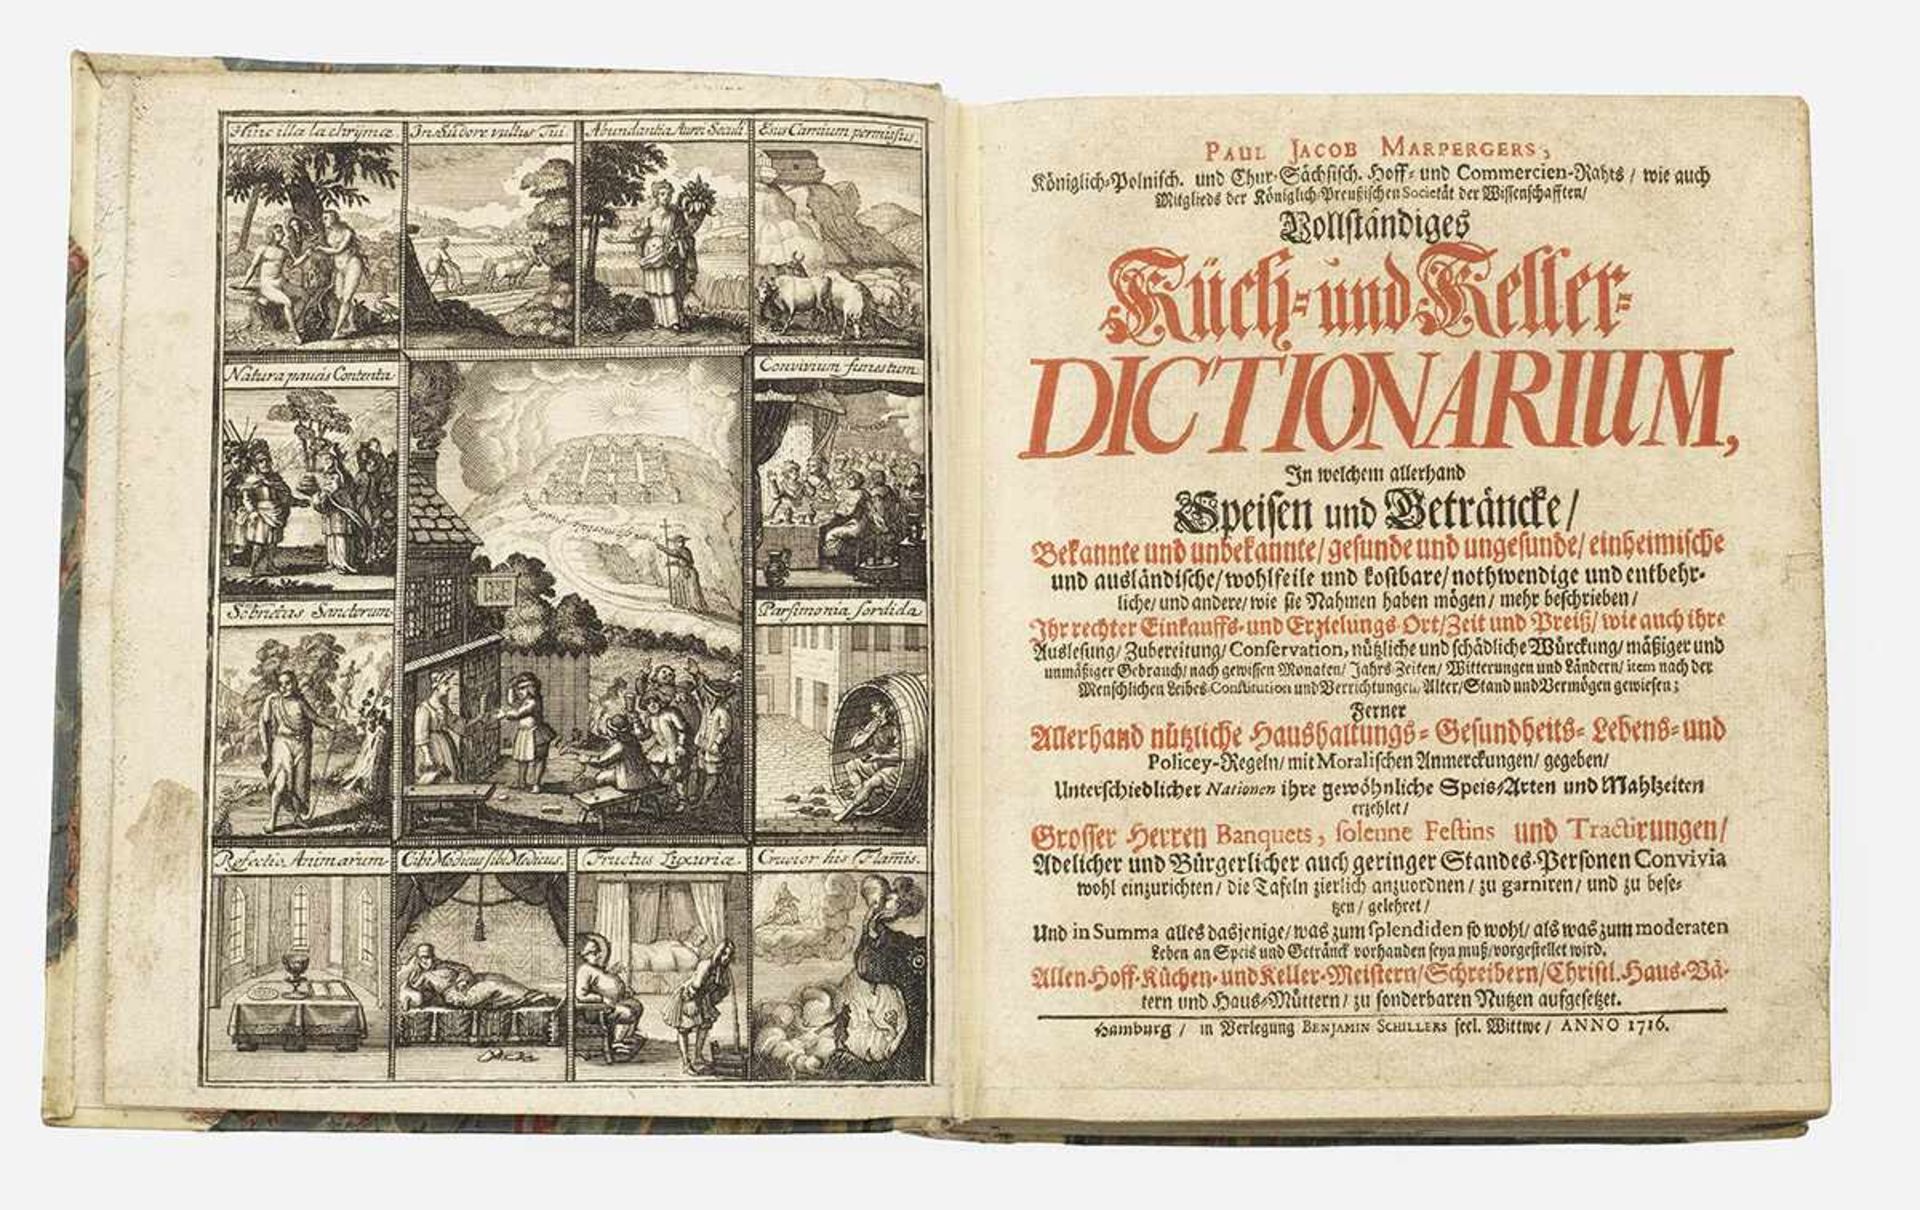 Paul Jacob Marperger: "Vollständiges Küch- und Keller-Dictionarium". OriginaltitelErste Ausgabe,